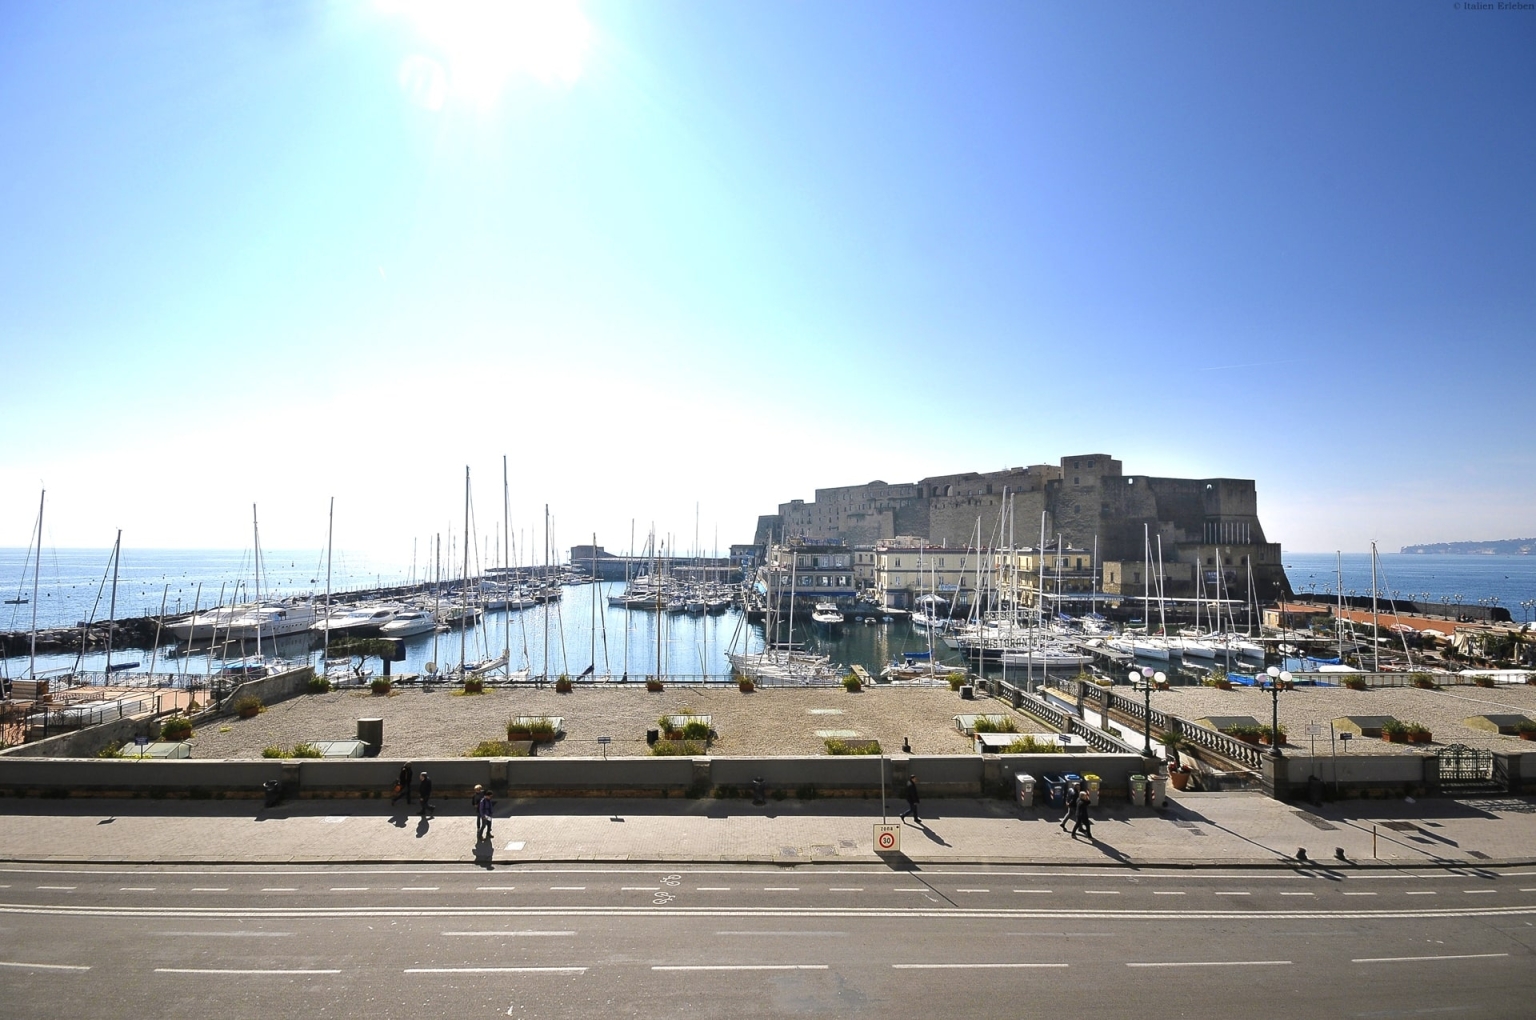 Kampanien Grand Hotel Santa Lucia Neapel Altstadt Lungomare Meer Meerblick Ausblick